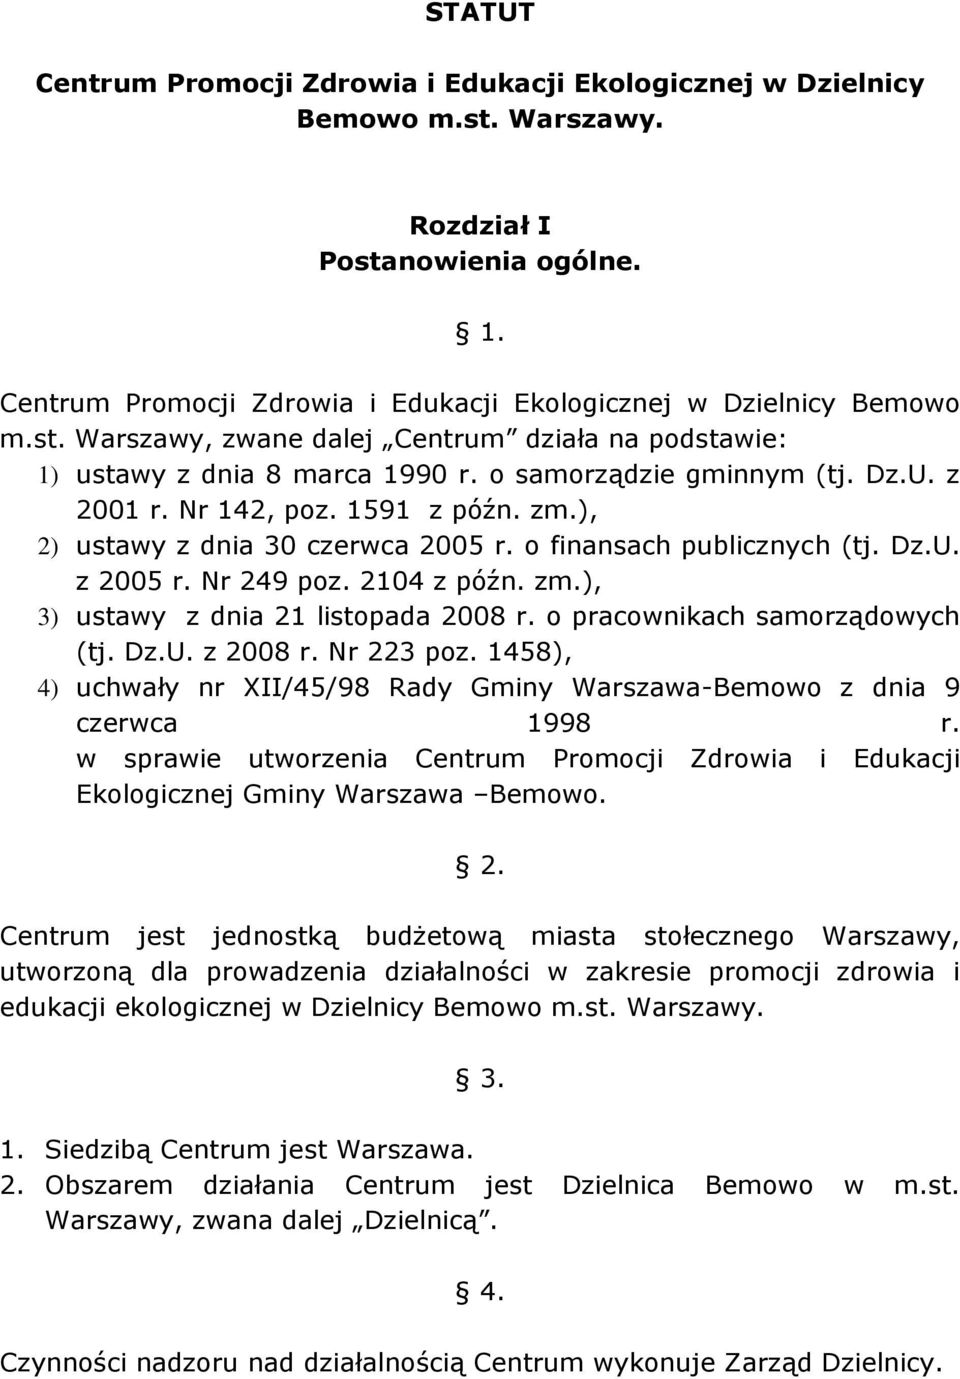 o pracownikach samorządowych (tj. Dz.U. z 2008 r. Nr 223 poz. 1458), 4) uchwały nr XII/45/98 Rady Gminy Warszawa-Bemowo z dnia 9 czerwca 1998 r.